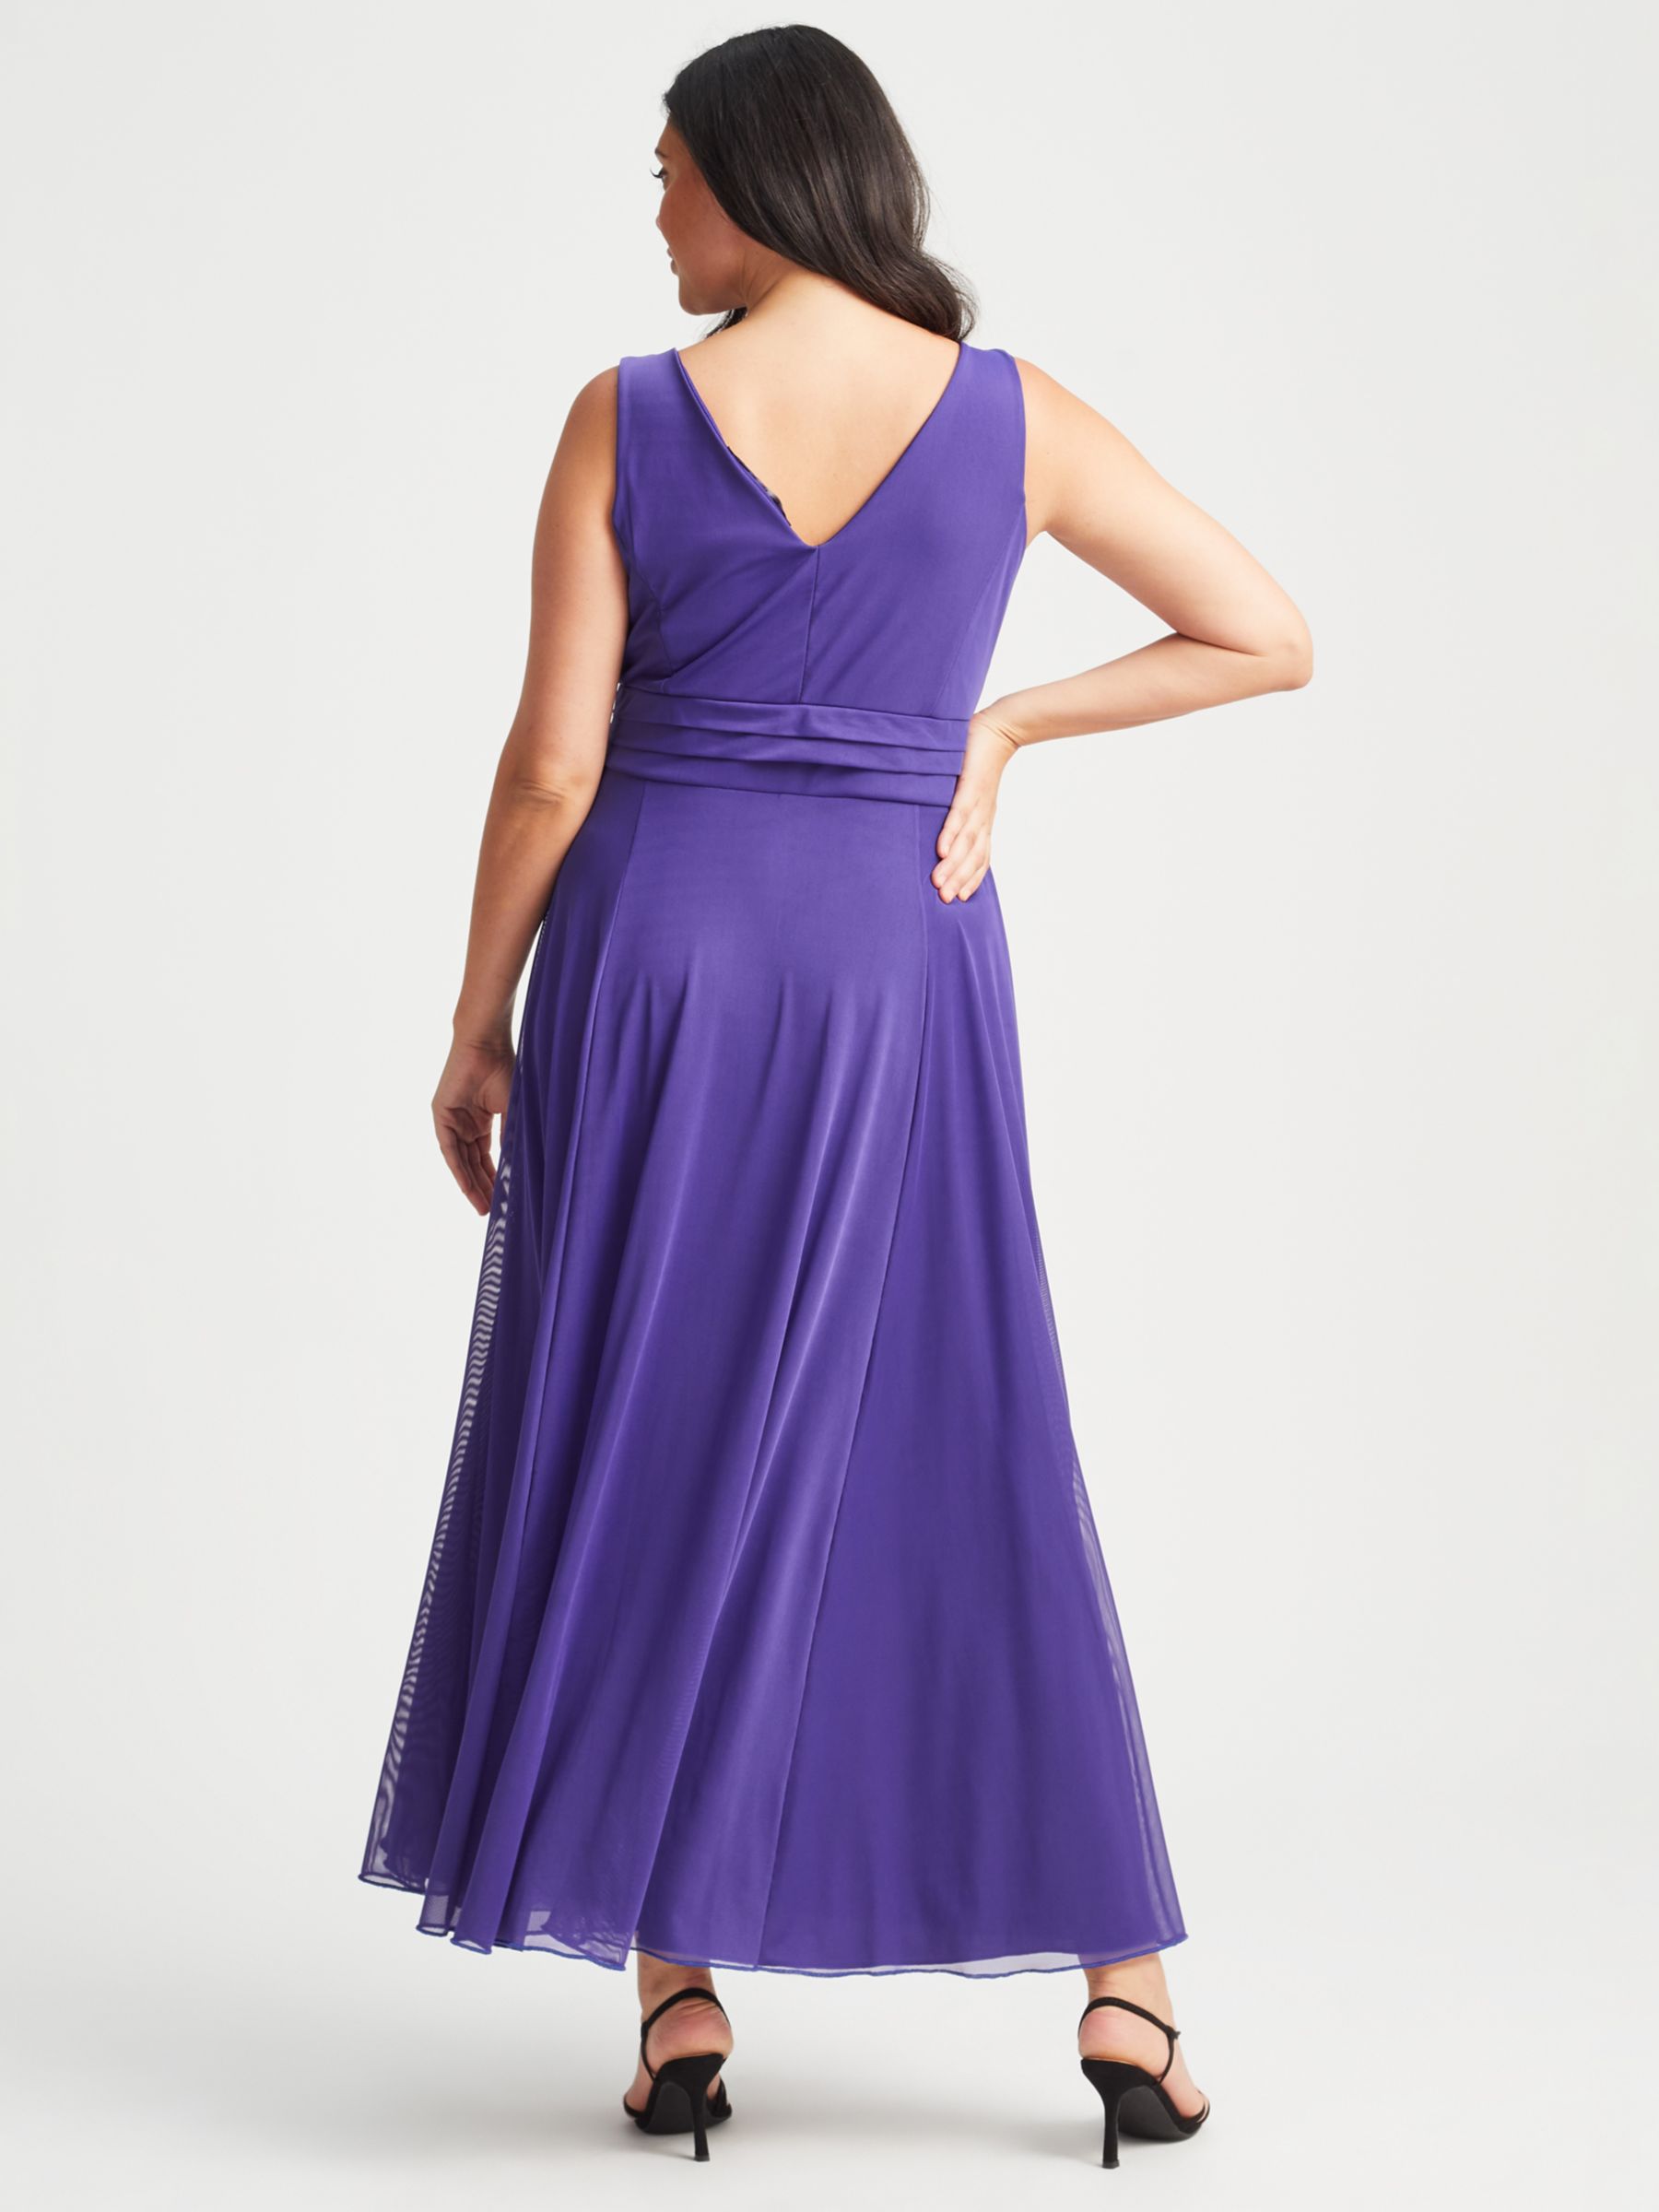 Scarlett & Jo Nancy Marilyn Maxi Dress, Purple at John Lewis & Partners